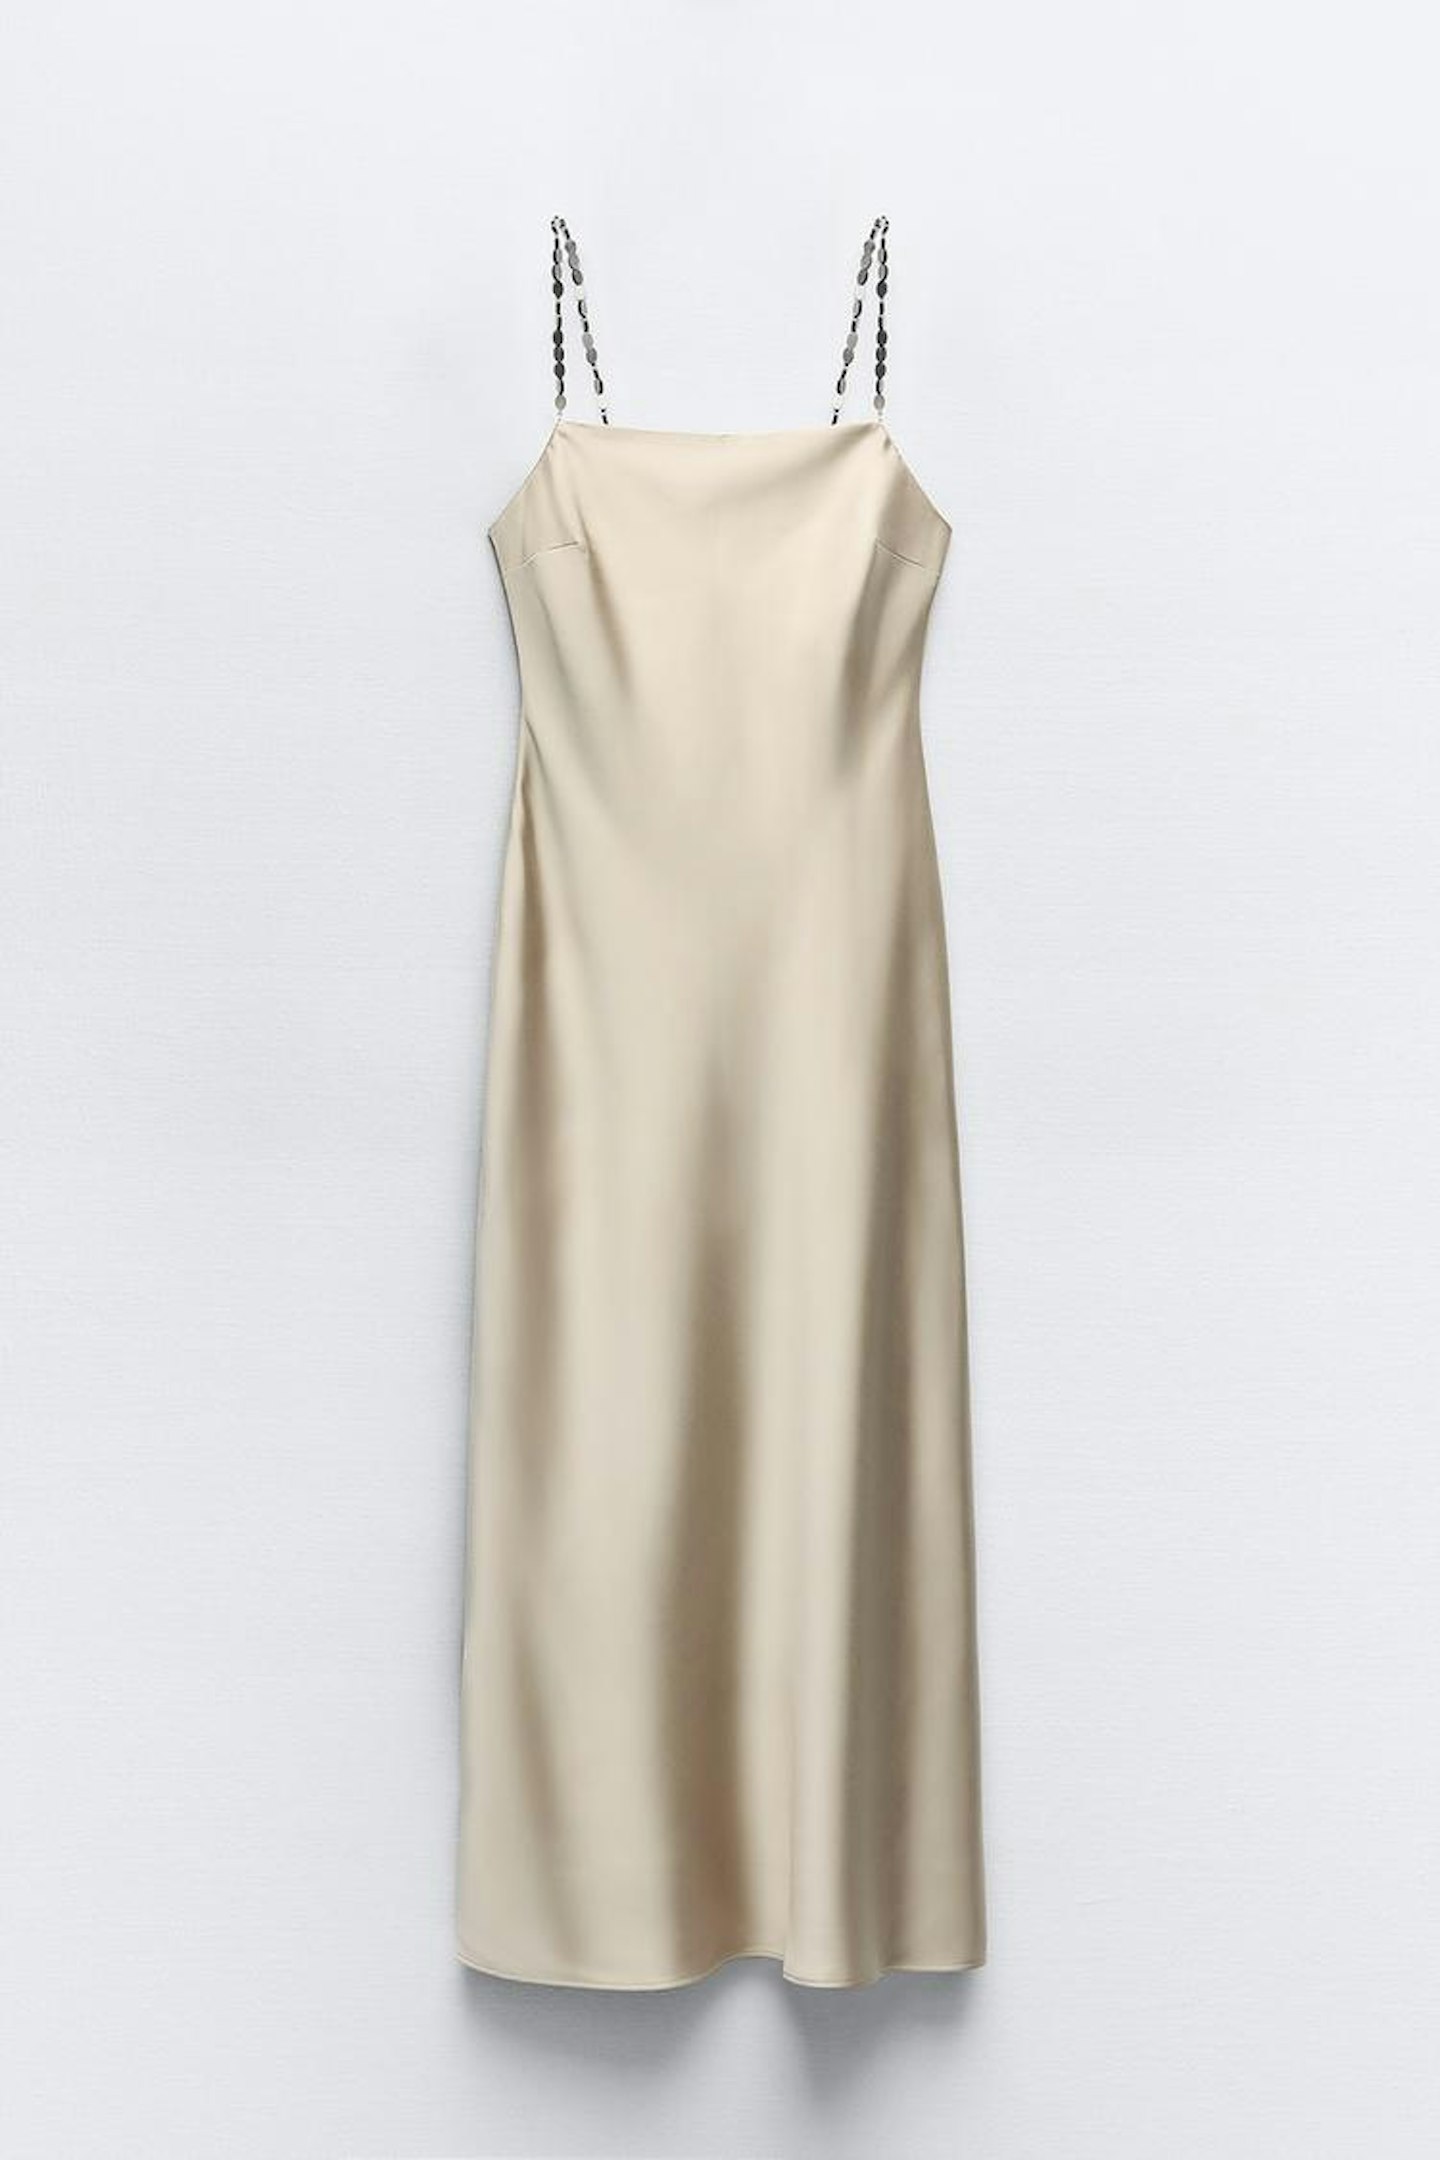 Zara, Slip Dress With Beaded Straps